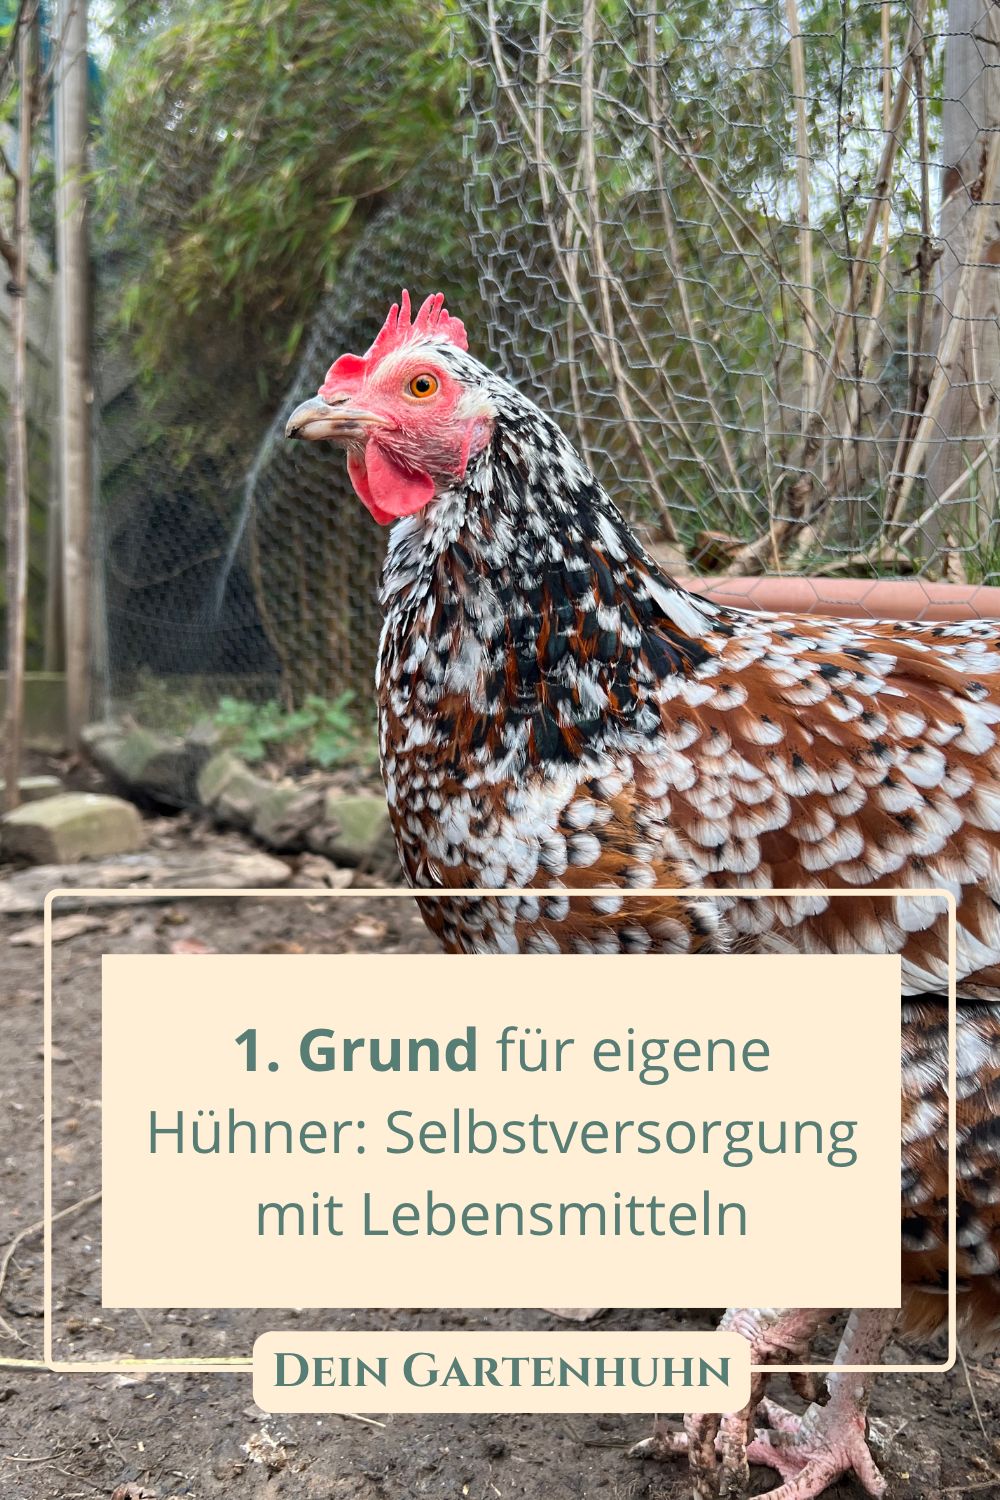 1. Grund für eigene Hühner: Selbstversorgung mit Lebensmitteln